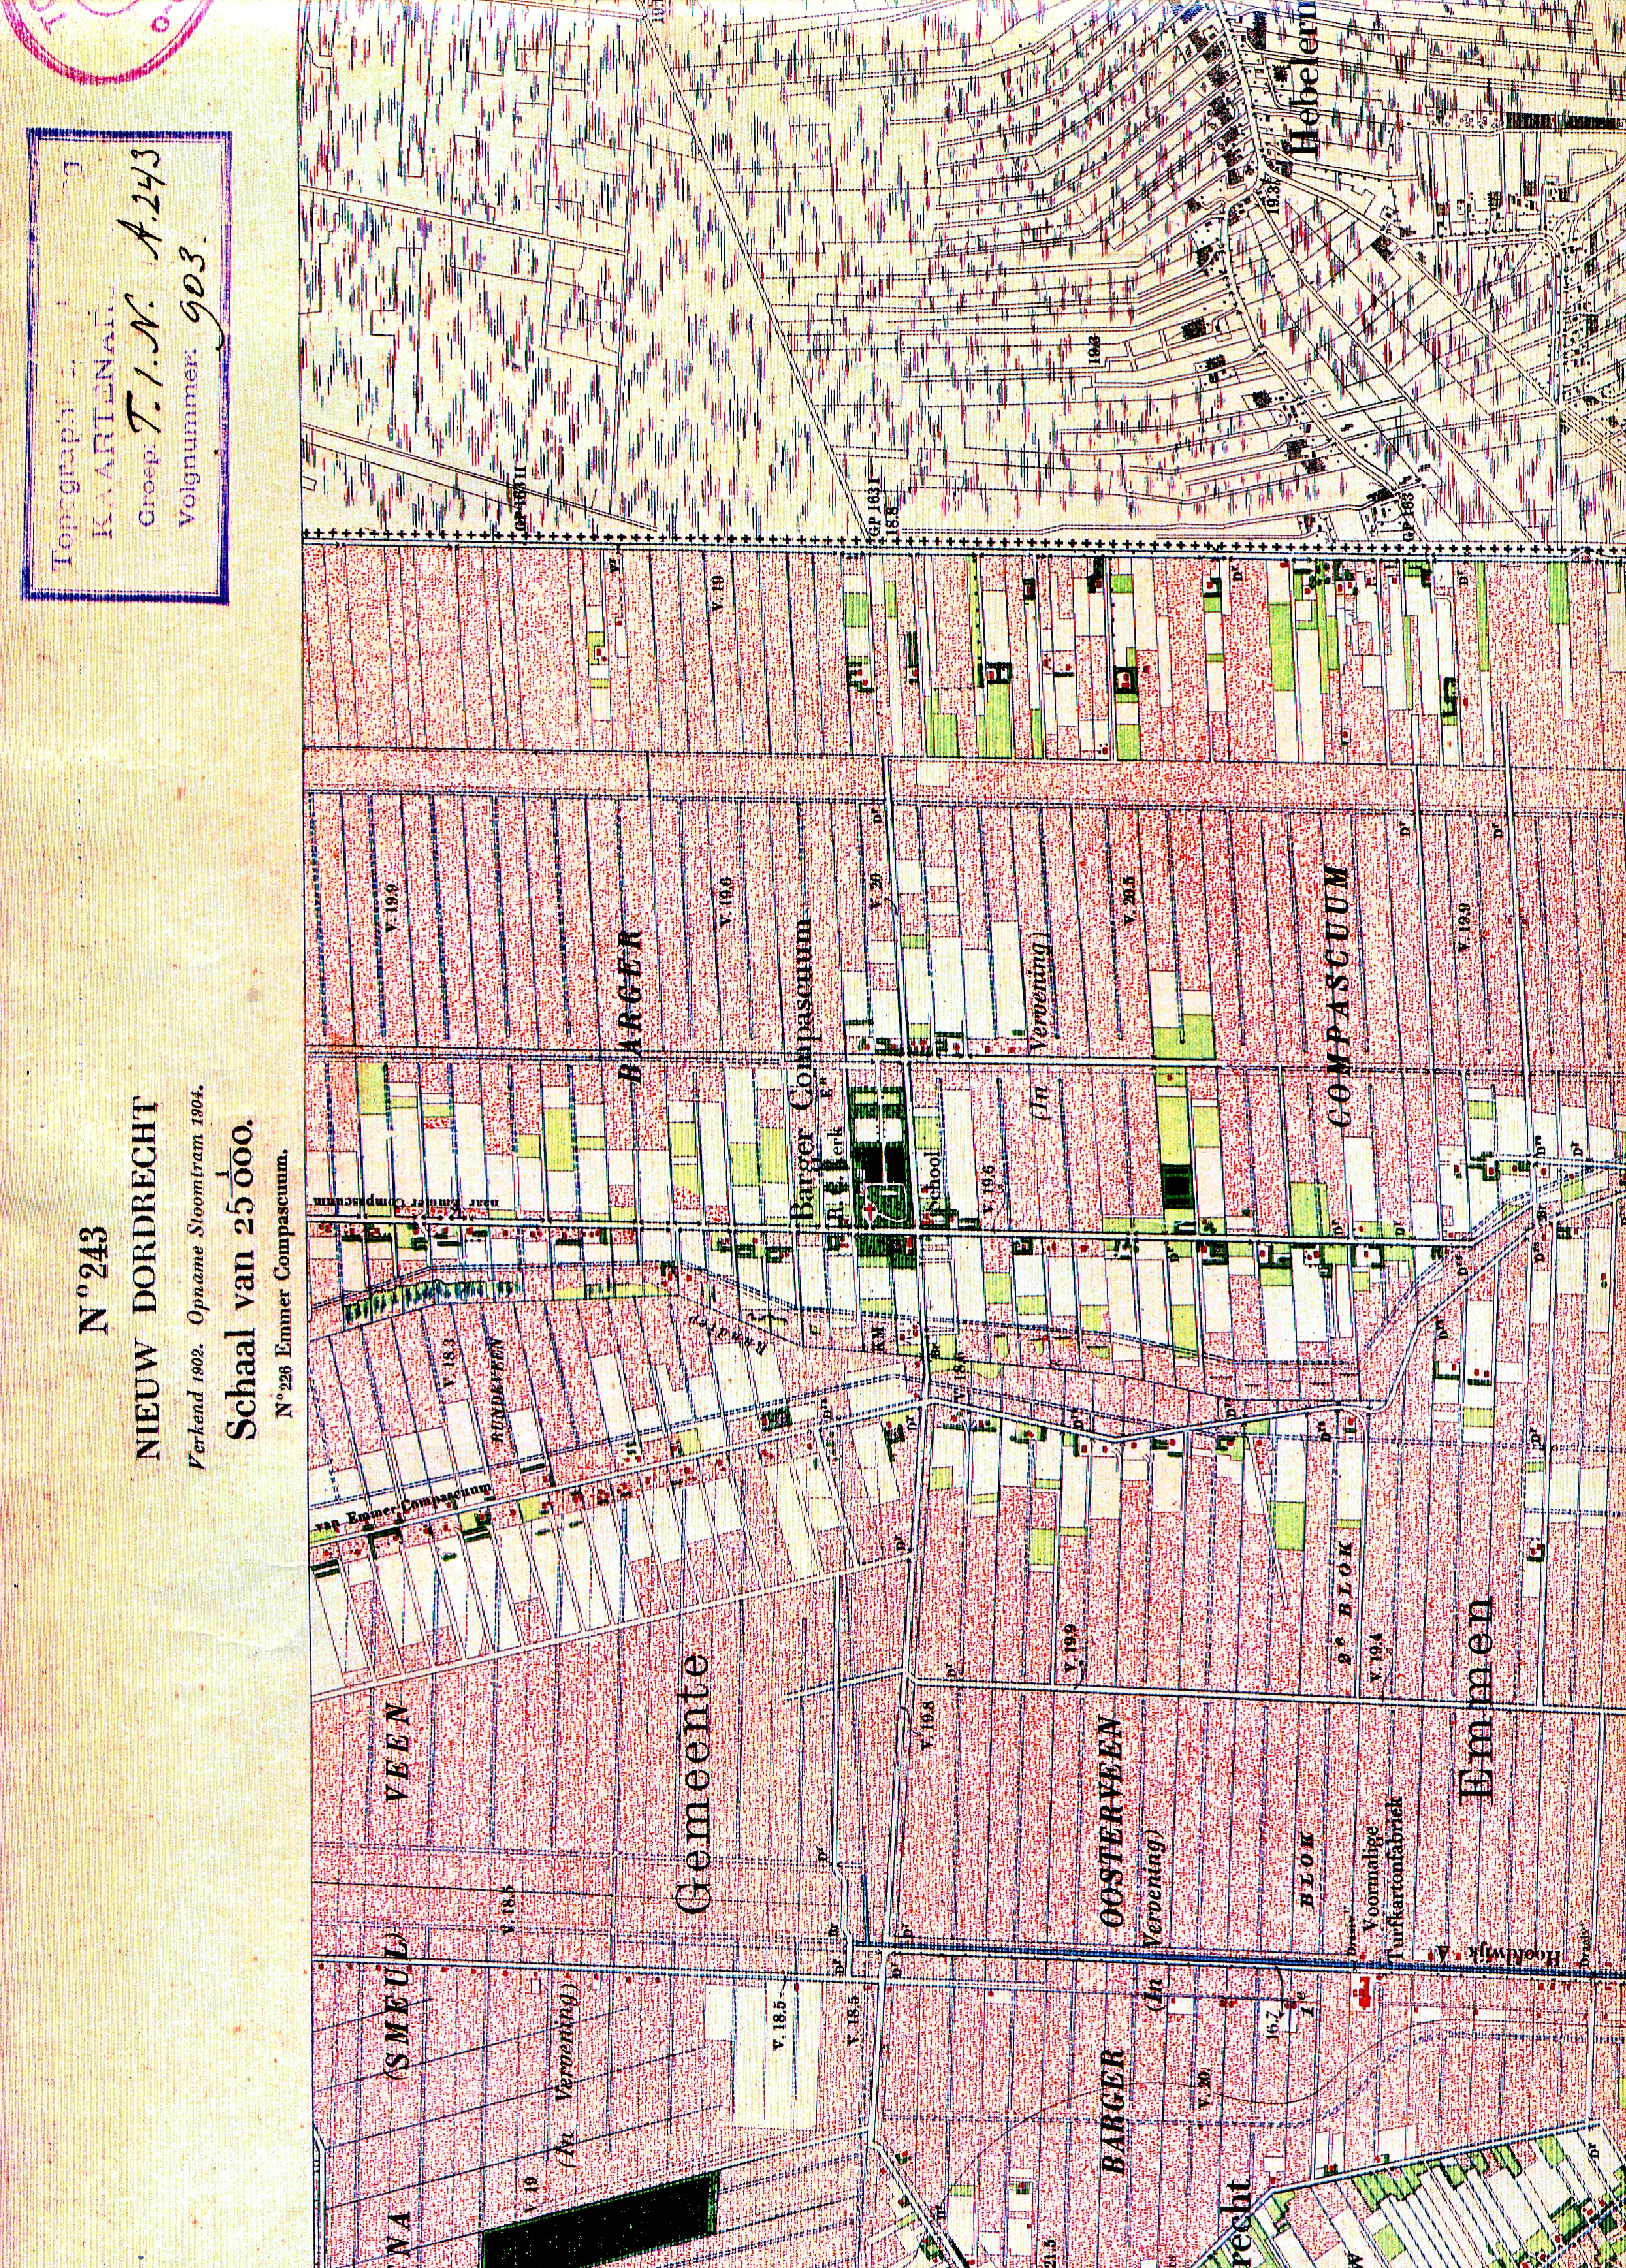 plattegrond 1902 nieuw-dordrecht 1:25000